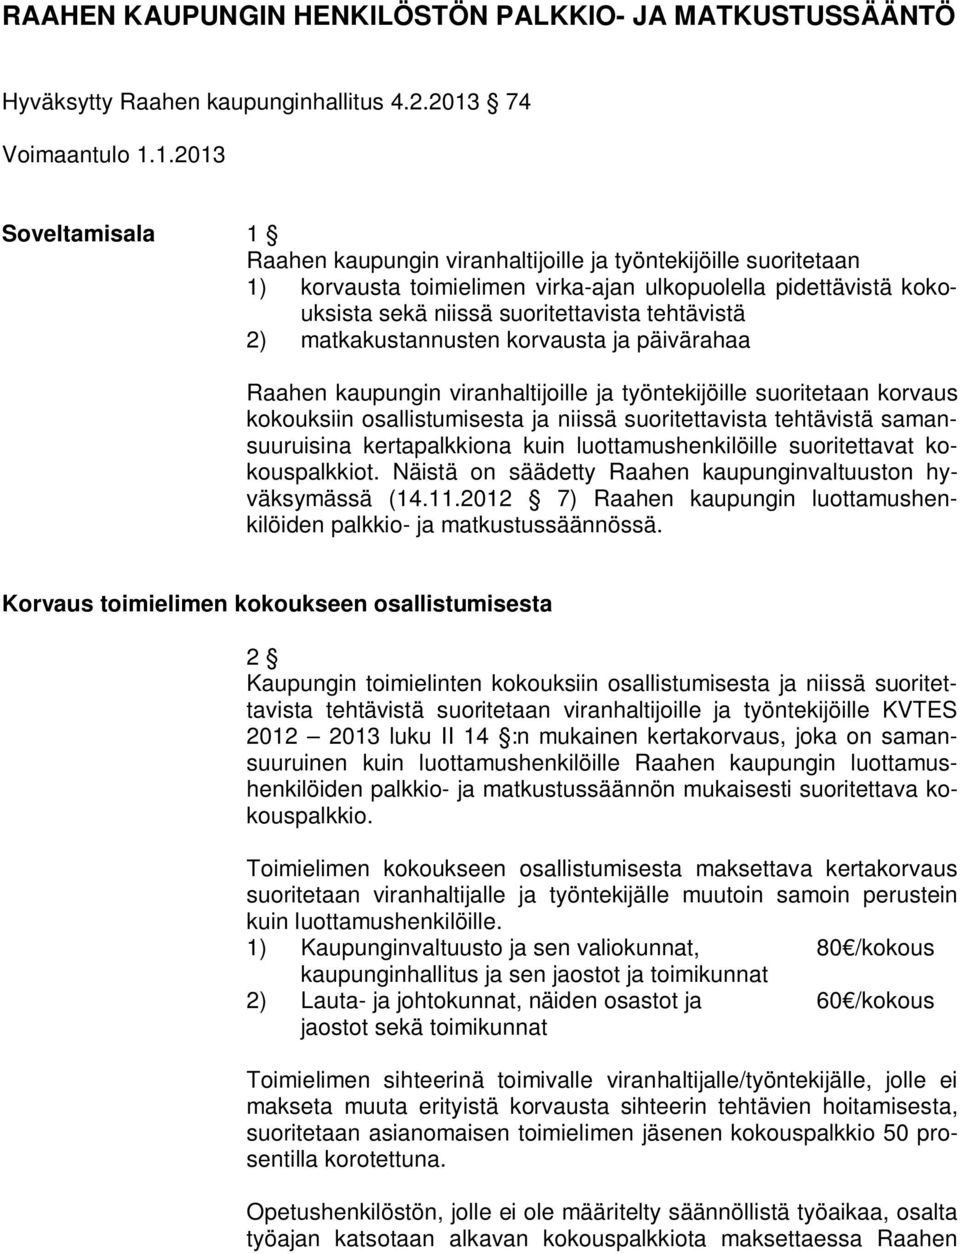 1.2013 Soveltamisala 1 Raahen kaupungin viranhaltijoille ja työntekijöille suoritetaan 1) korvausta toimielimen virka-ajan ulkopuolella pidettävistä kokouksista sekä niissä suoritettavista tehtävistä